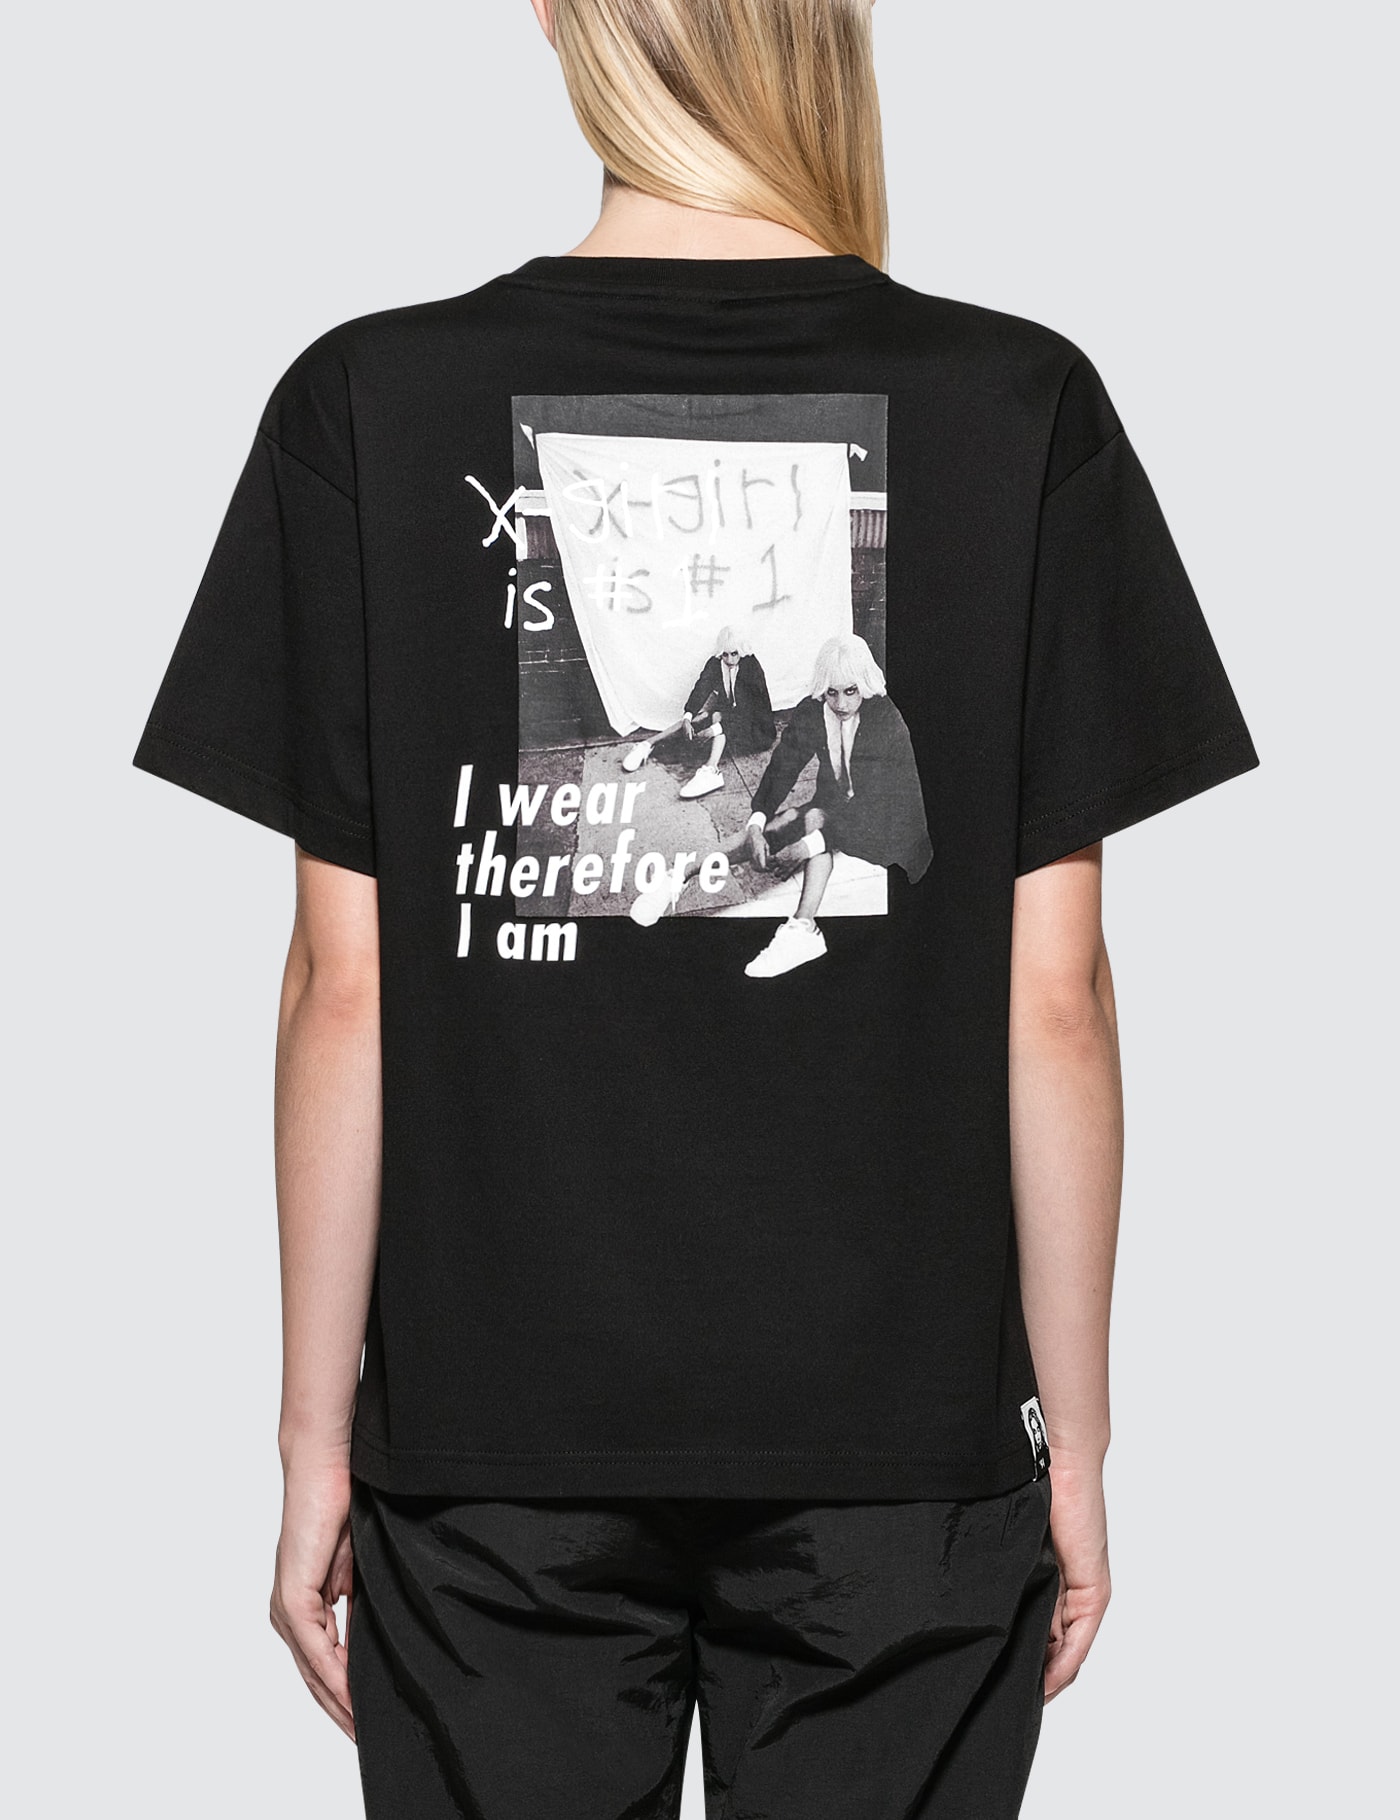 X-Girl - Chloe Sevigny Xgirl Is 1 S/S Big T-Shirt | HBX